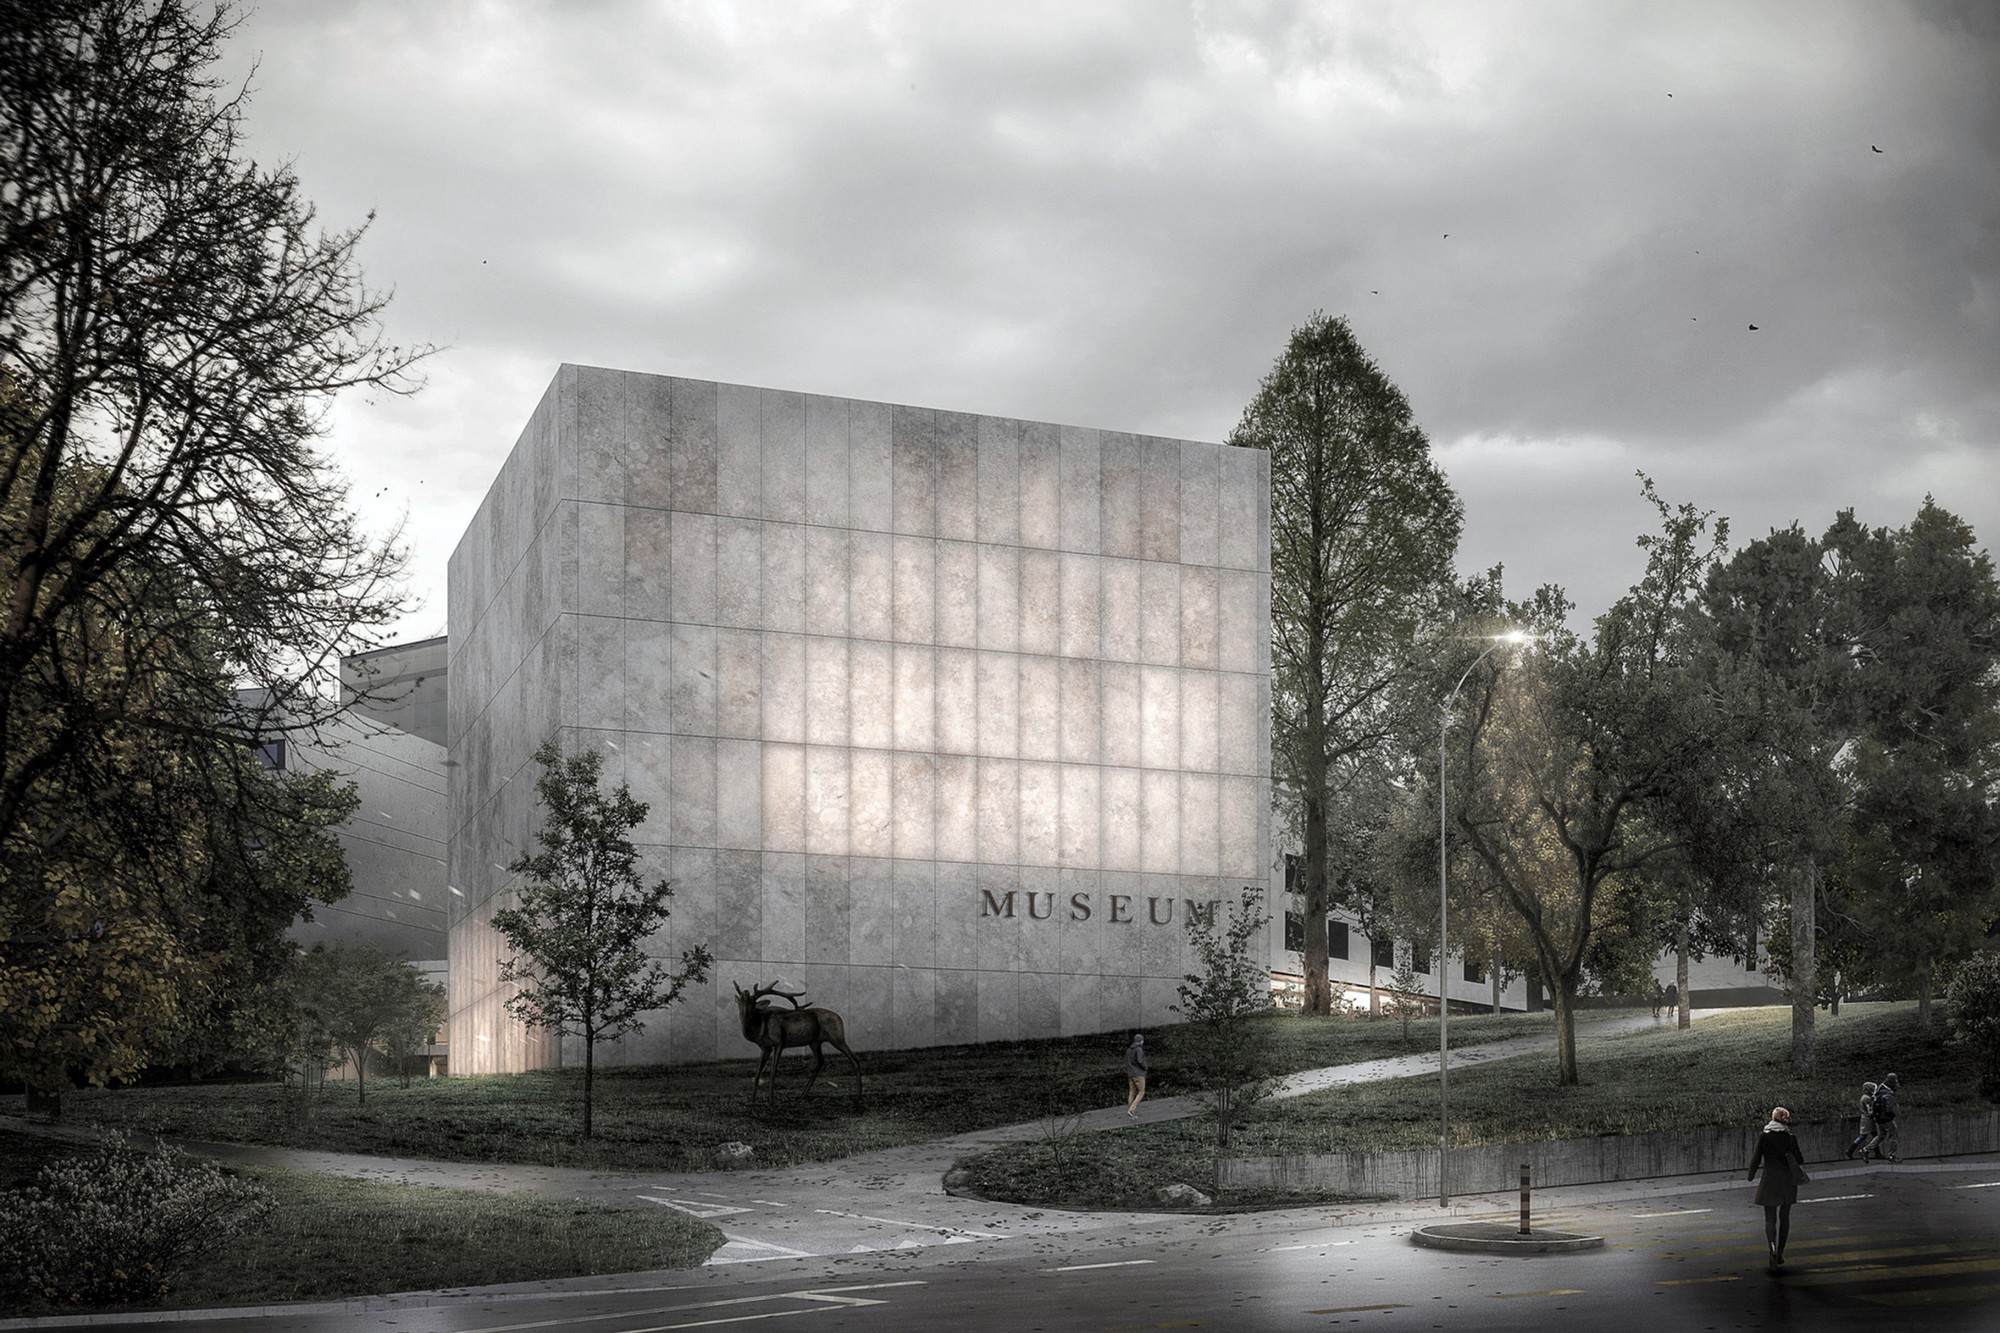 Le projet «Ambre» a remporté le premier prix du concours d’architecture pour la construction d’une extension, la mise en sécurité et la réorganisation partielle du Muséum d’histoire naturelle.